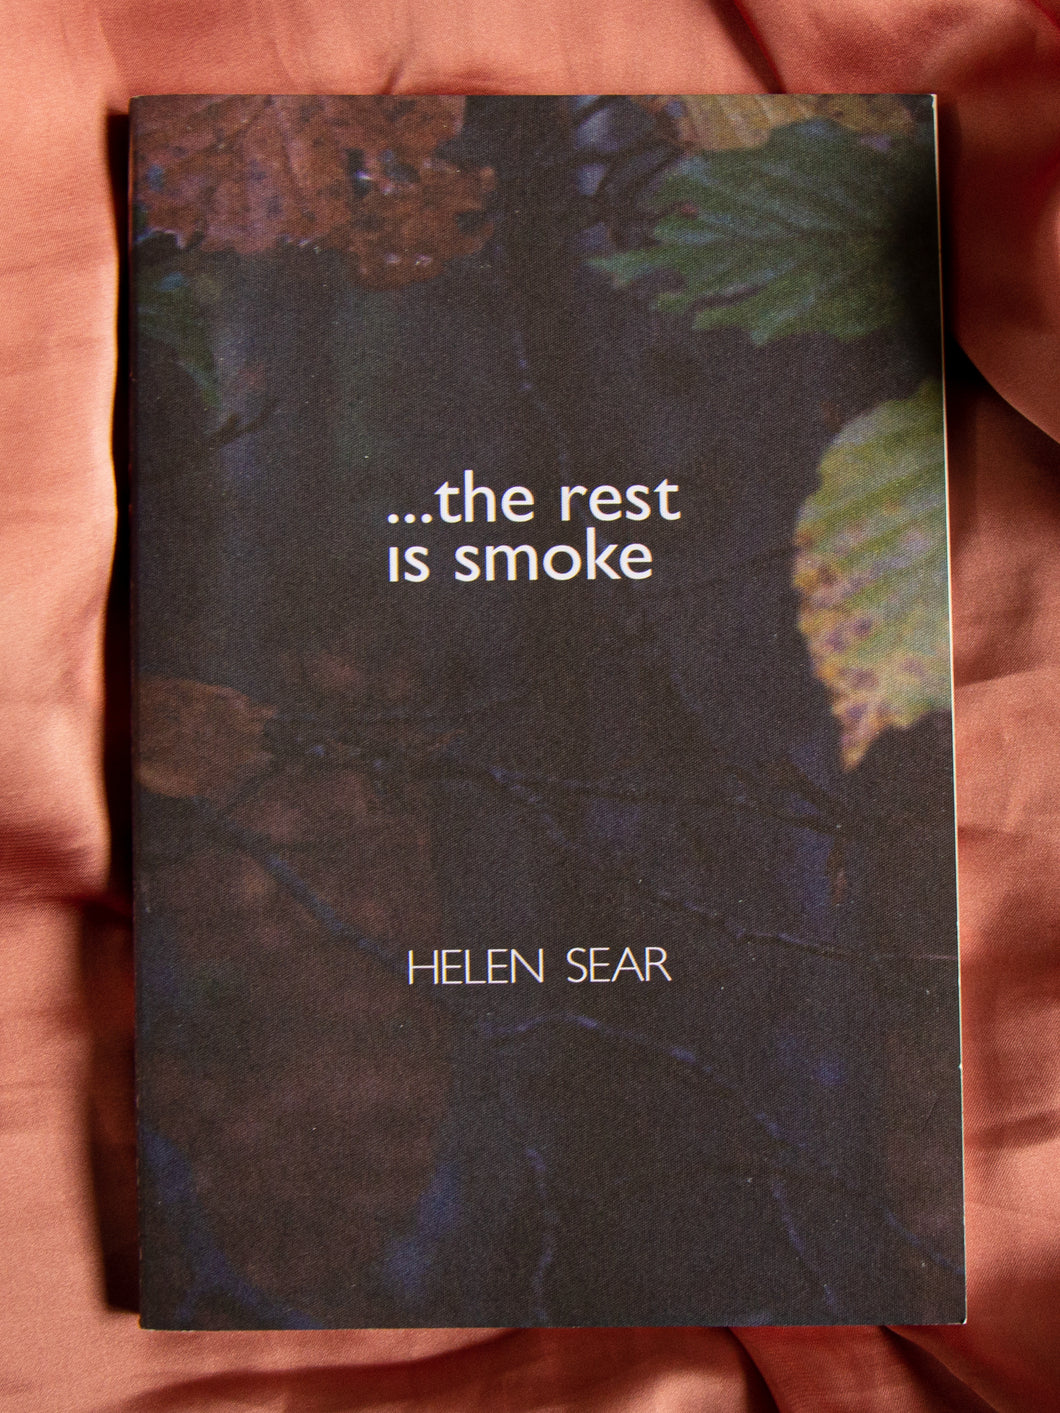 ...the rest is smoke - Helen Sear